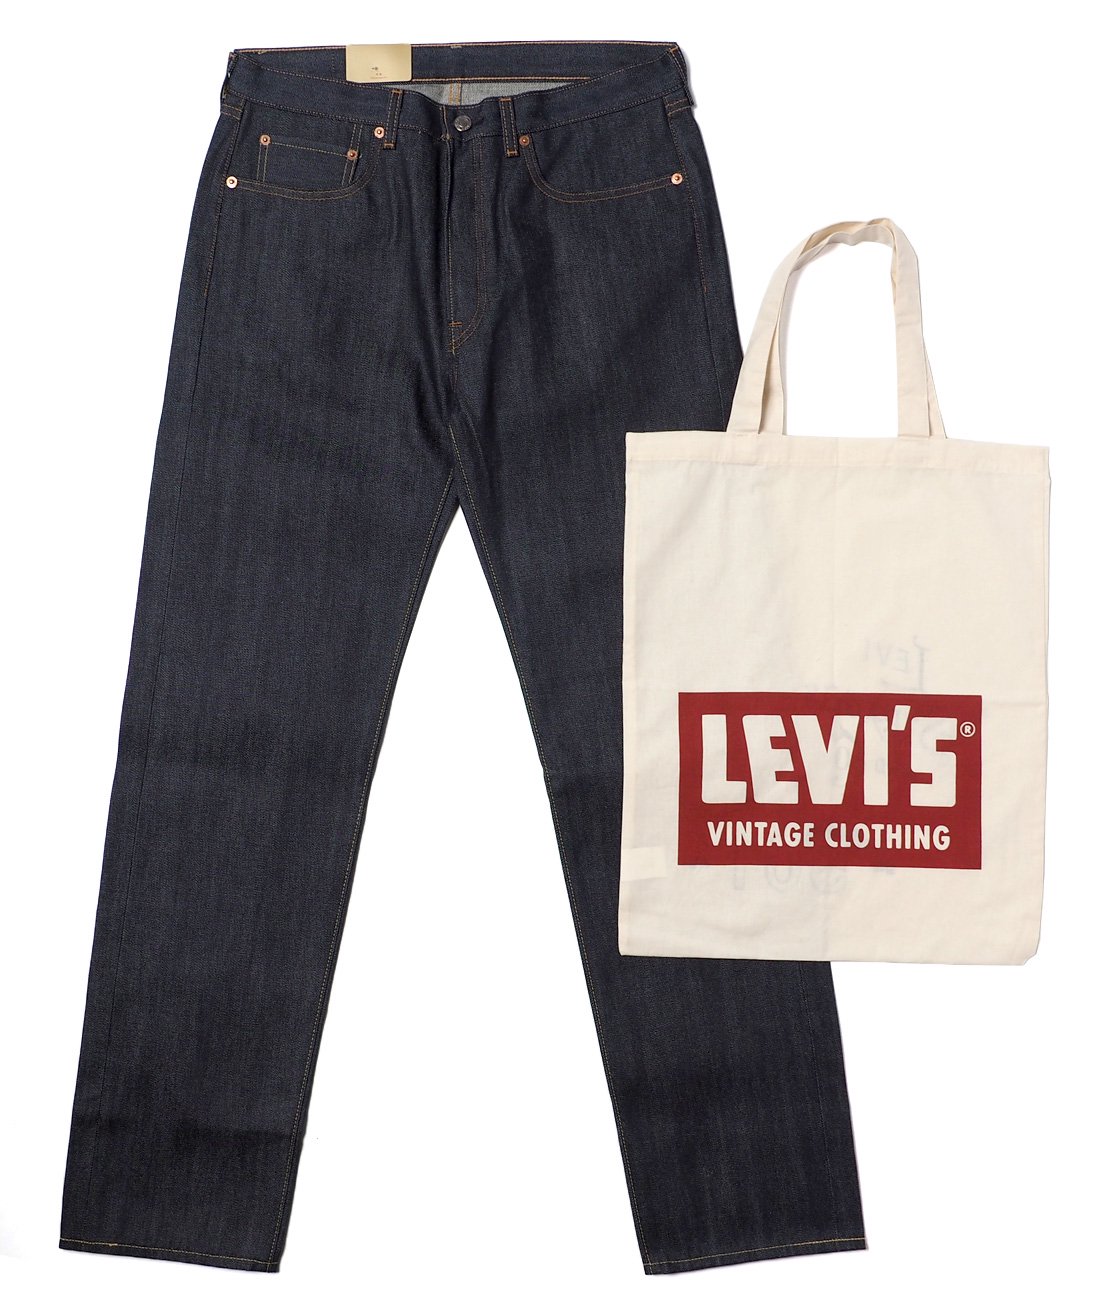 【LEVI'S VINTAGE CLOTHING】1966 501 JEANS - RIGID カイハラデニム リジッドジーンズ 日本製 -  HUNKY DORY | LEVI'S VINTAGE CLOTHING、JACKMAN、CHAMPIONなどのブランドを主に扱うセレクトショップ 通販